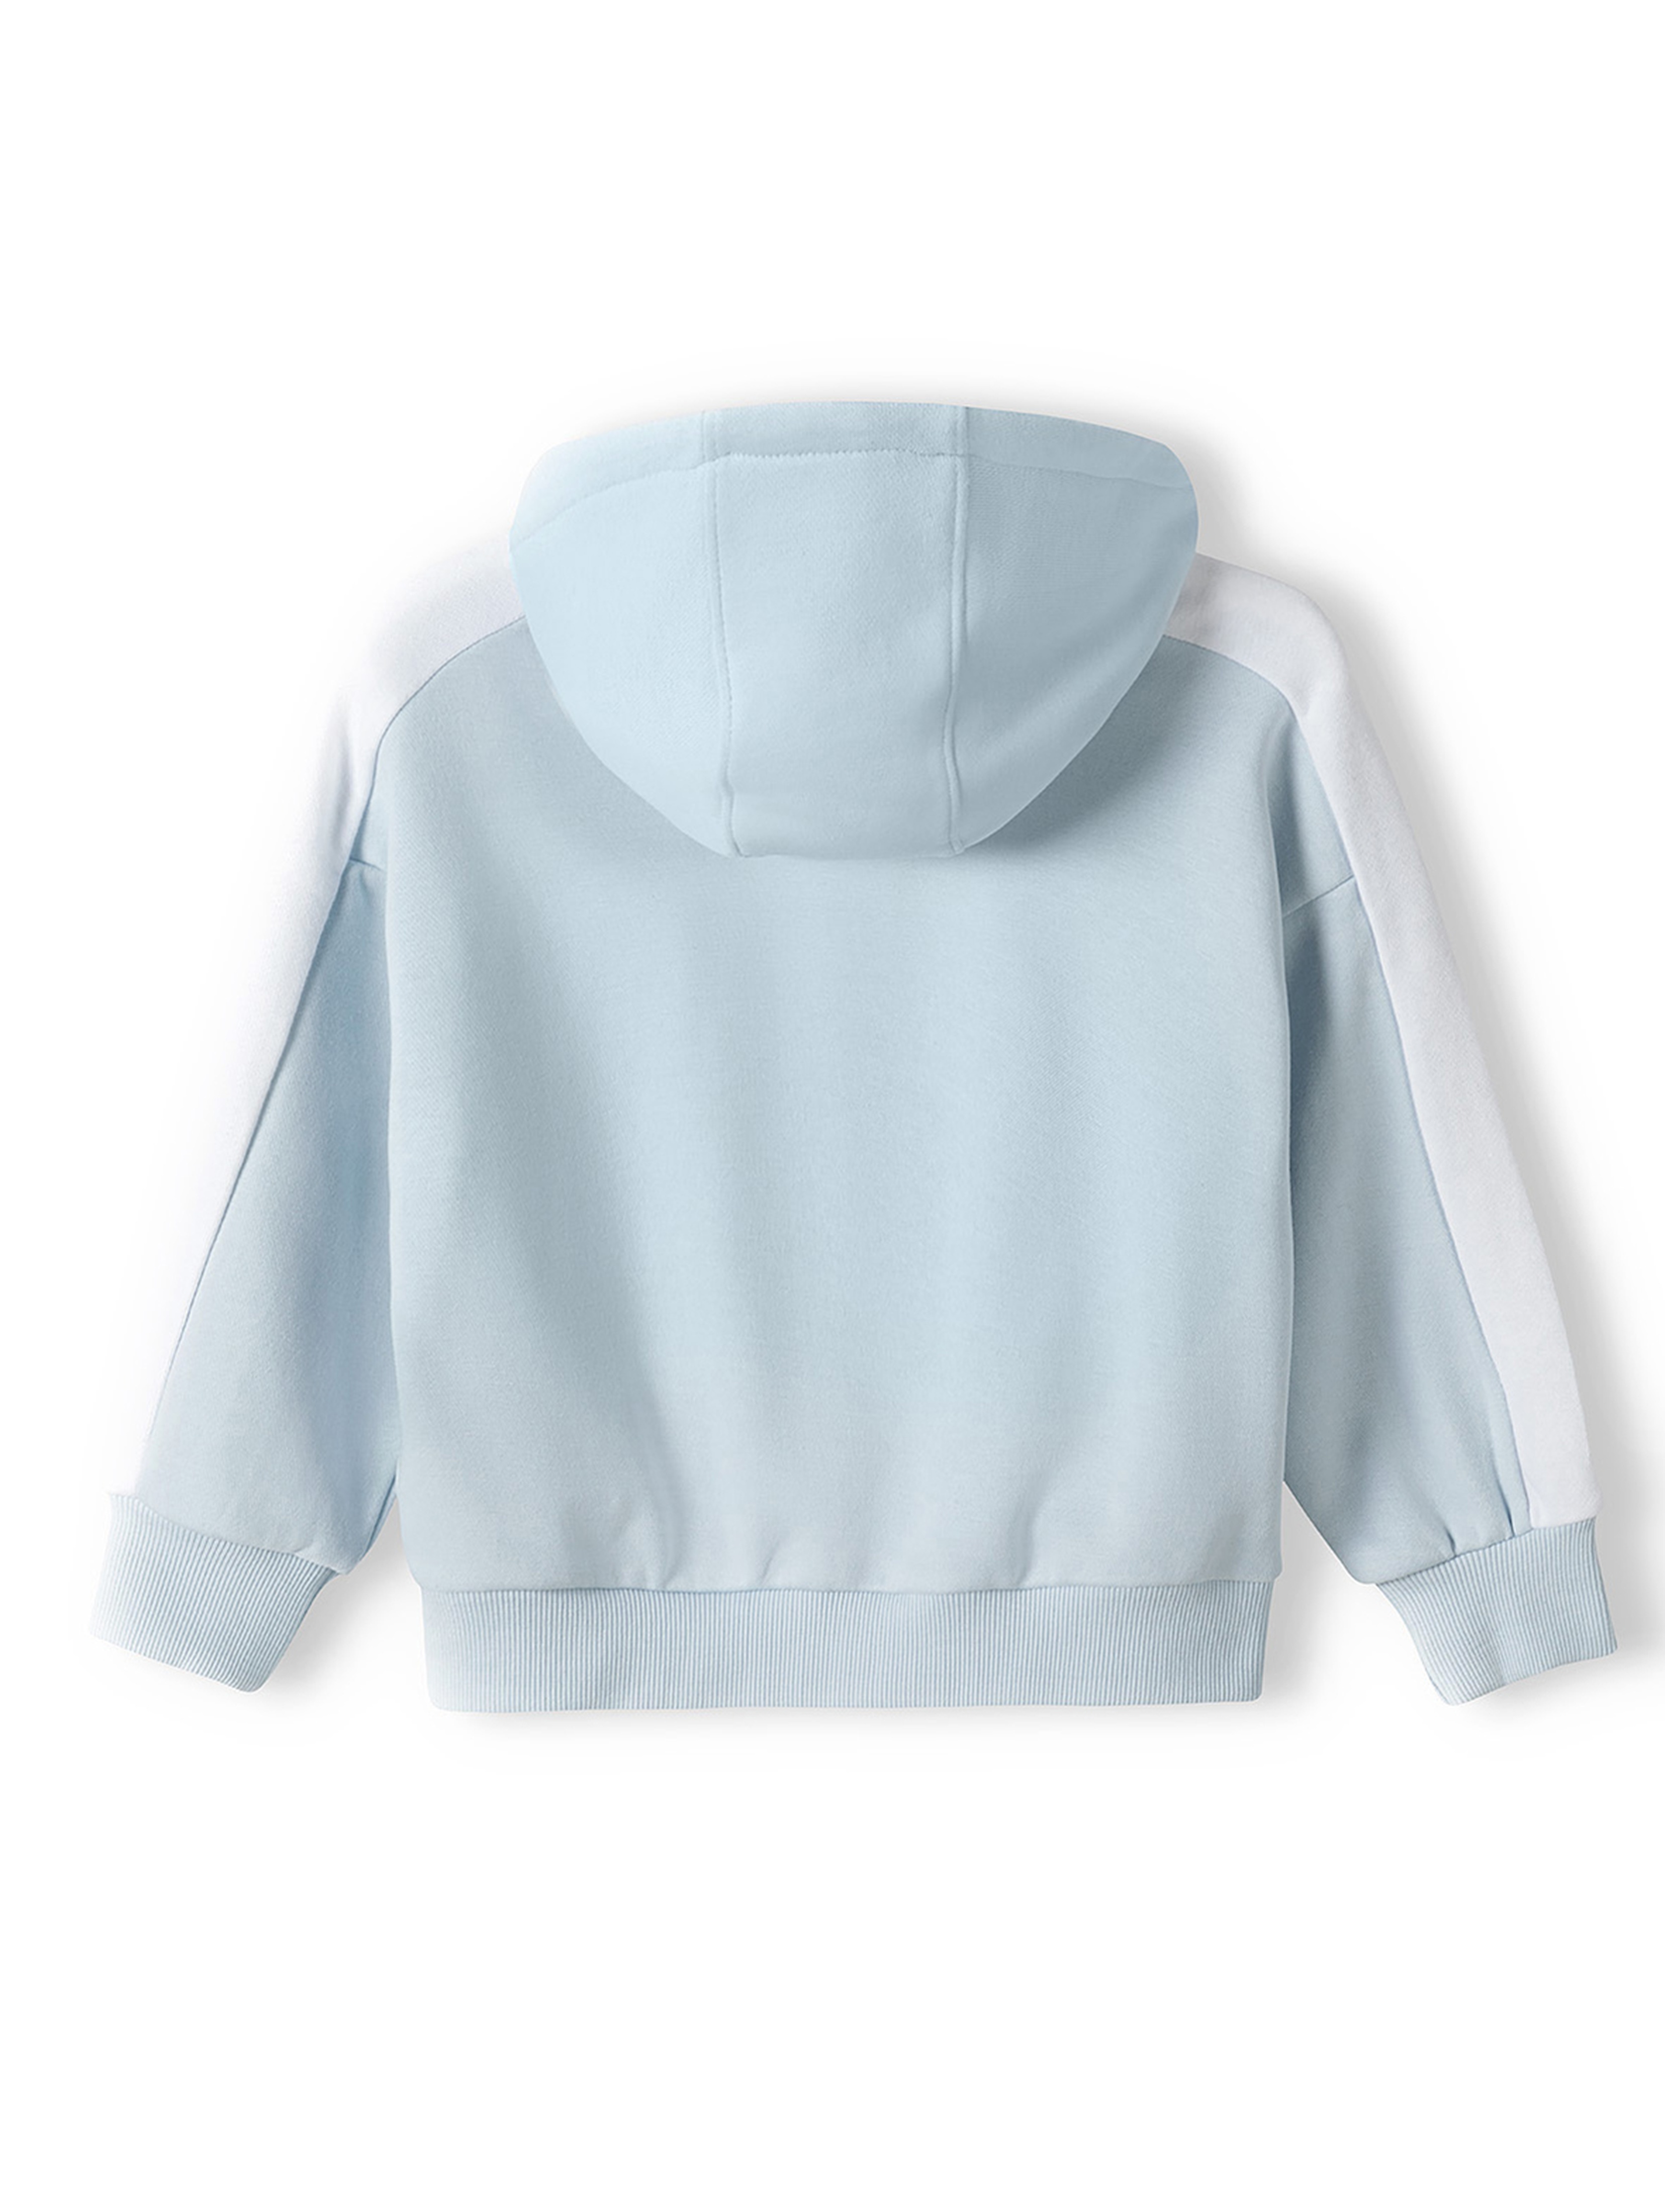 Błękitna bluza dresowa rozpinana niemowlęca z kapturem